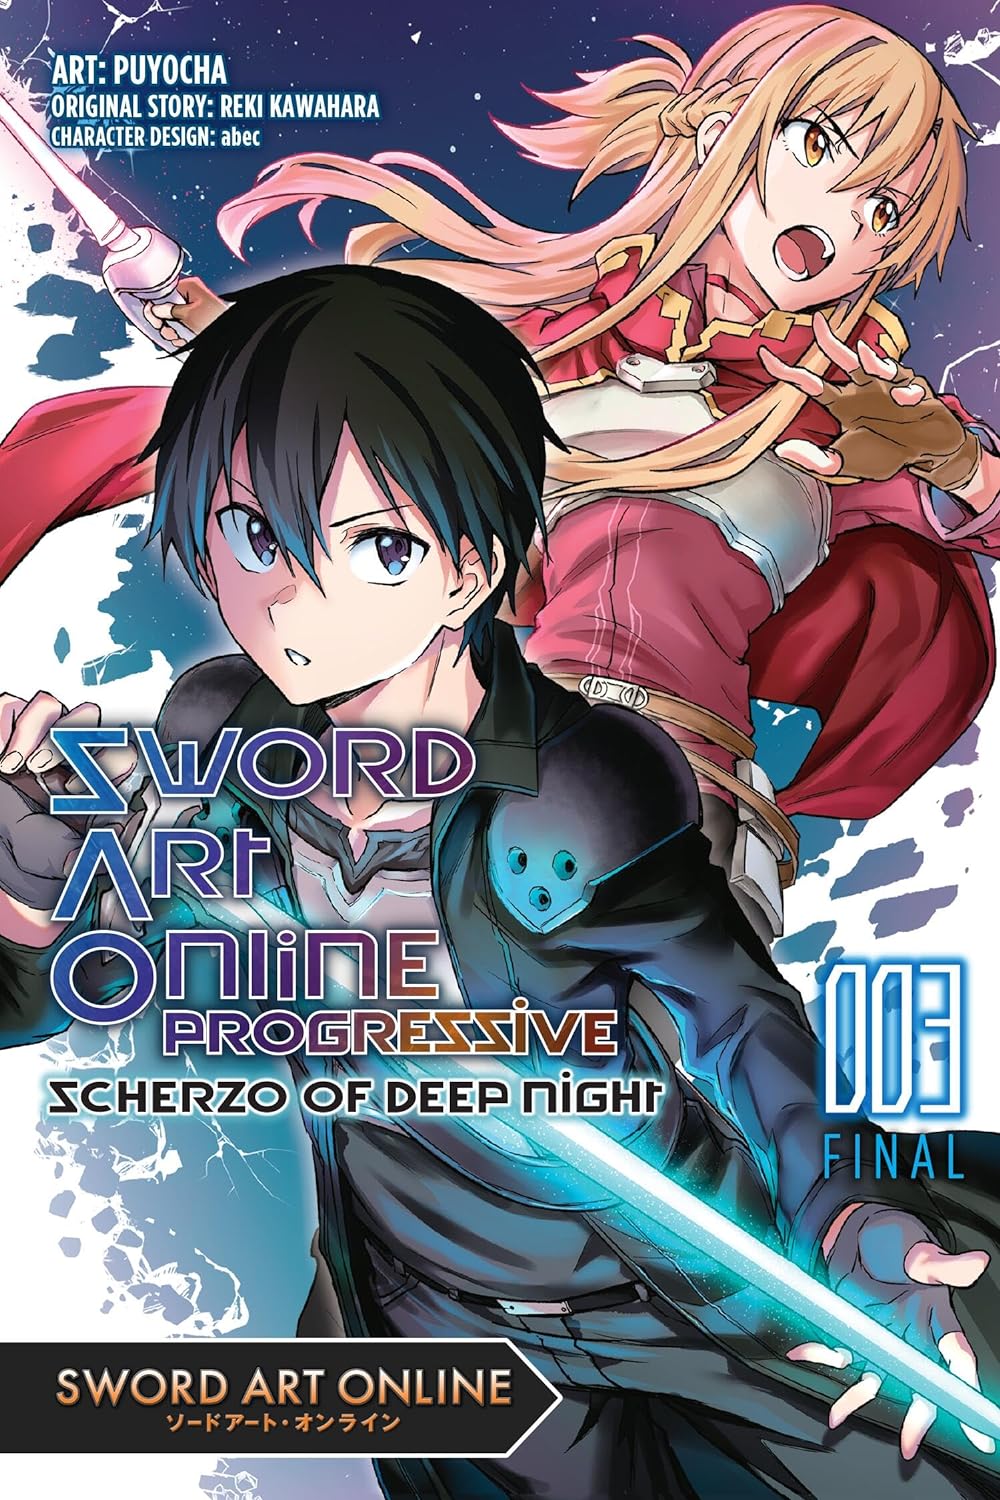 Sword Art Online Progressive Scherzo of Deep Night Vol. 03 (Manga)